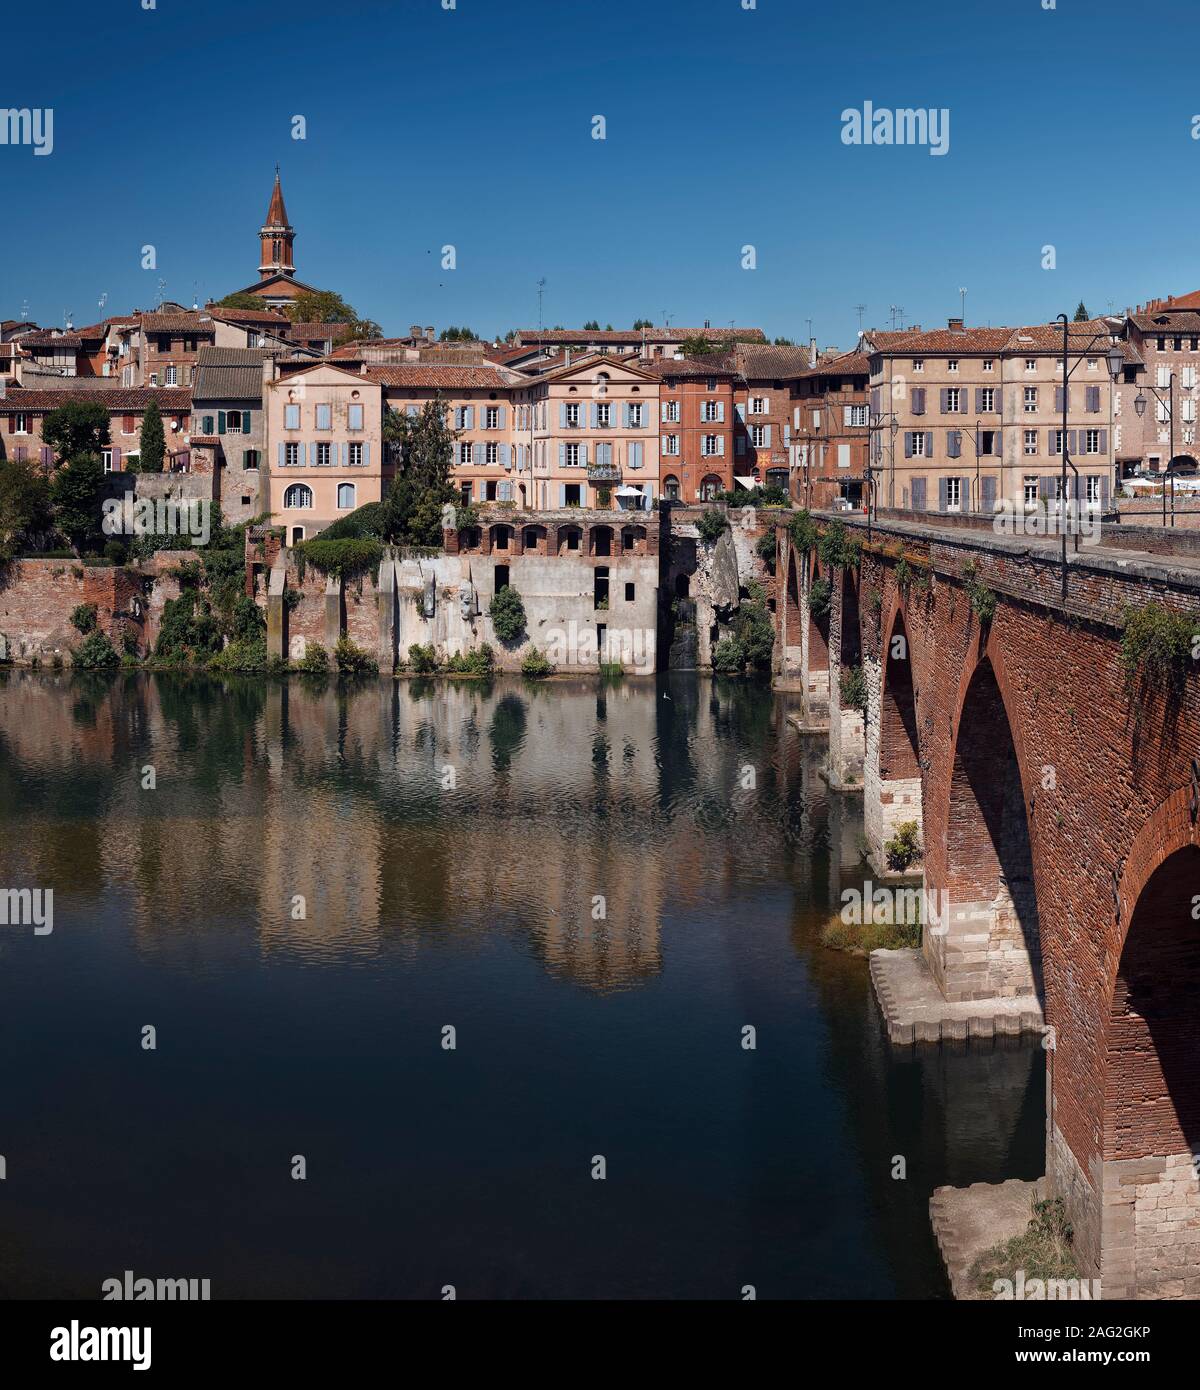 Ville d'Albi dans le sud de la France, l'architecture historique de la ville avec l'ancien pont Pont Vieux sur la rivière Tarn. Banque D'Images